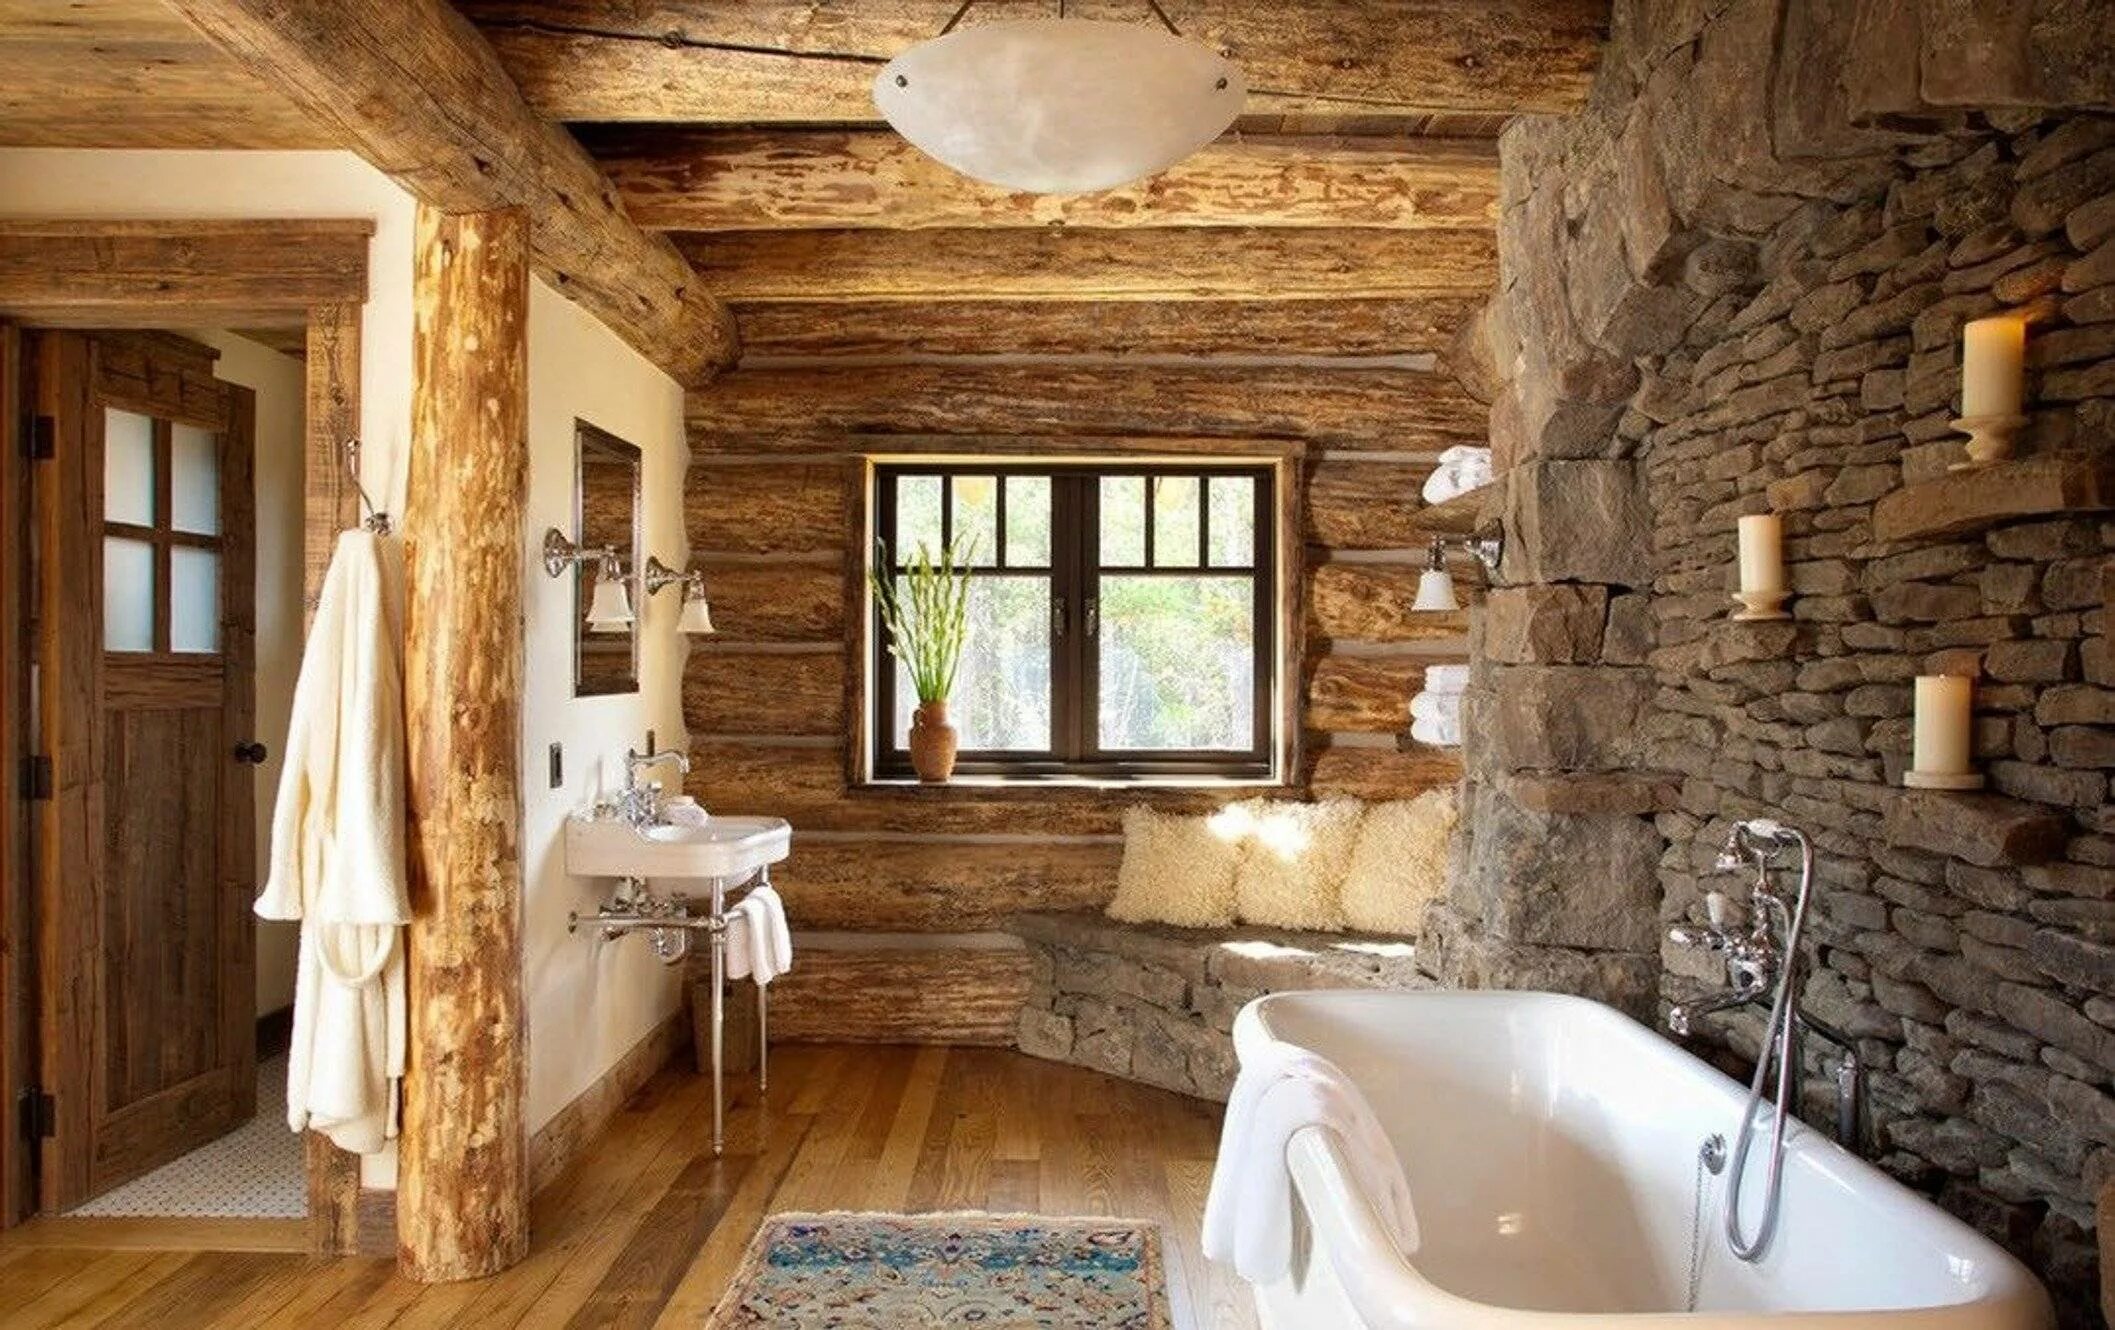 Отделка деревянной комнаты. Сан УЗЕЛТВ деревенском стиле. Отделка комнаты. Ванная в деревянном доме. Ваееая в деревянном доме.